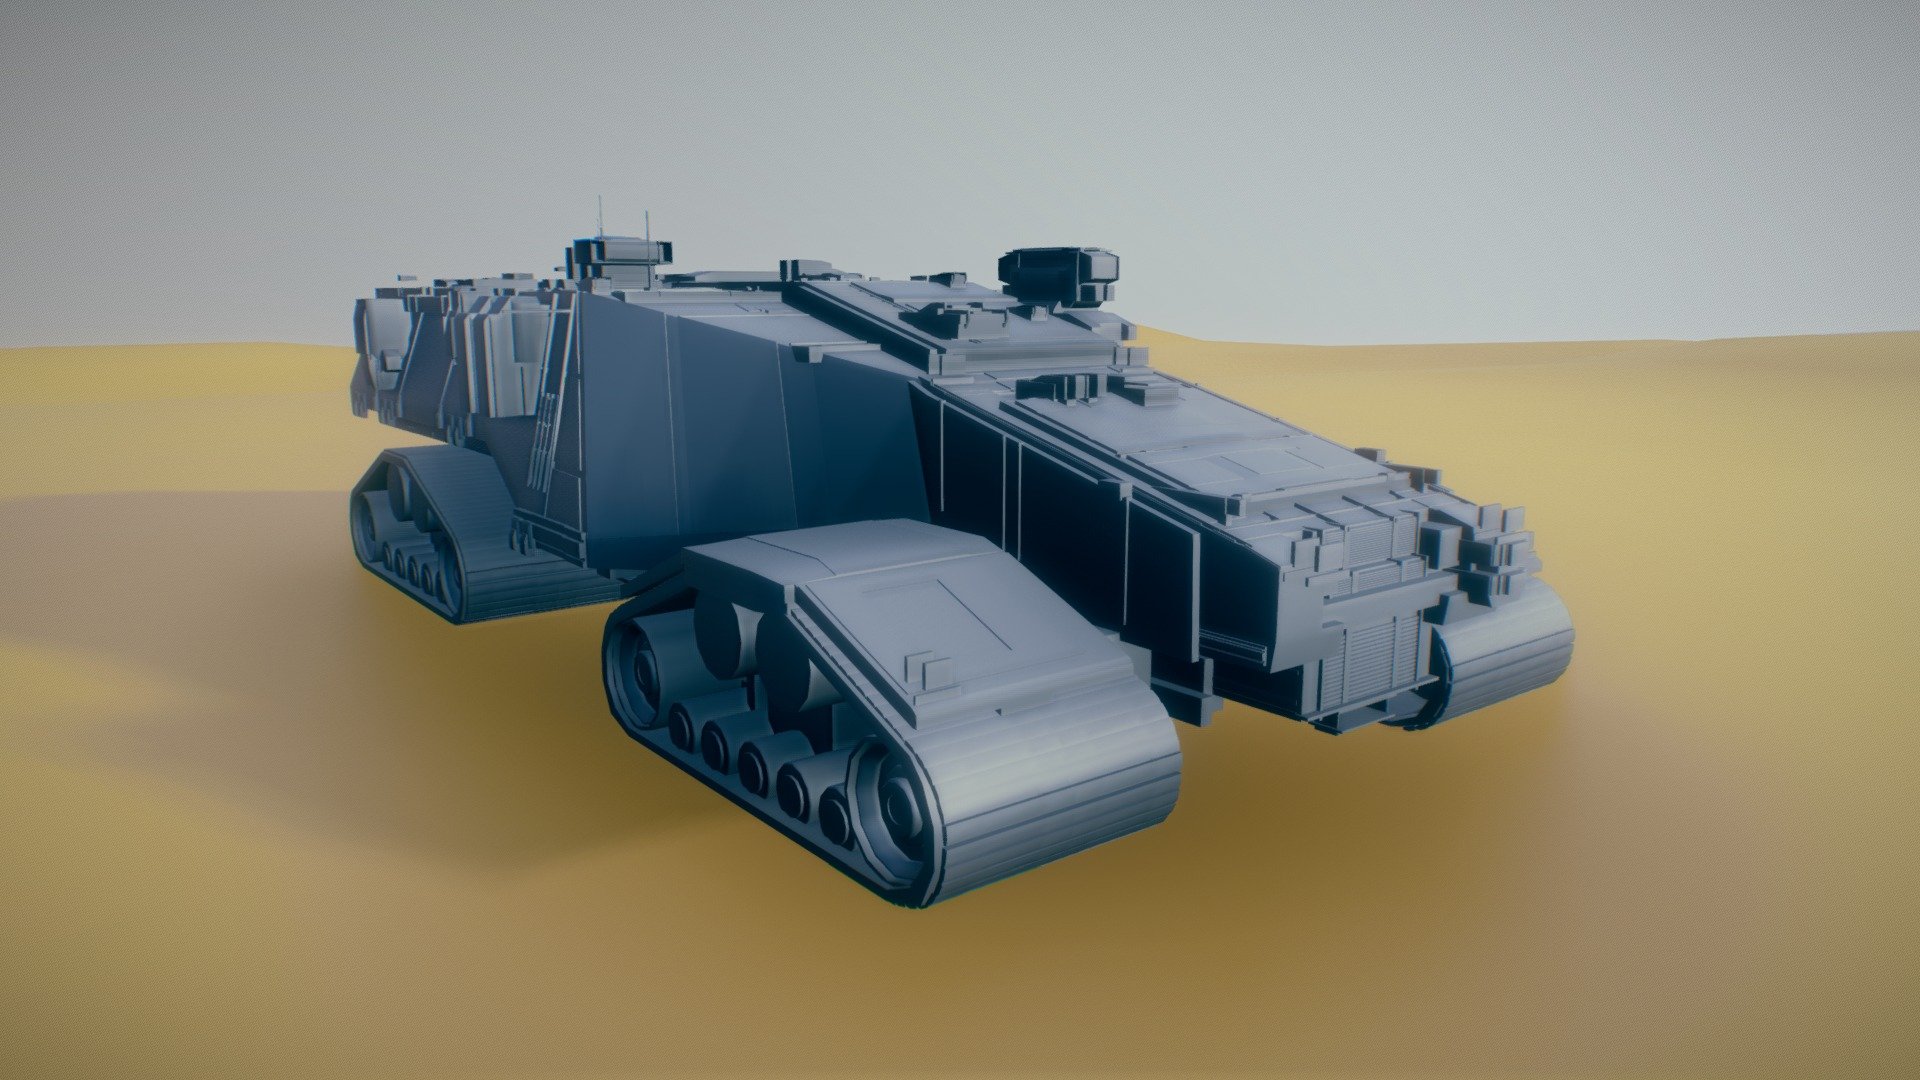 sandcrawler 02 - 3D model by ztrztr (@ztrztr3) 3d model